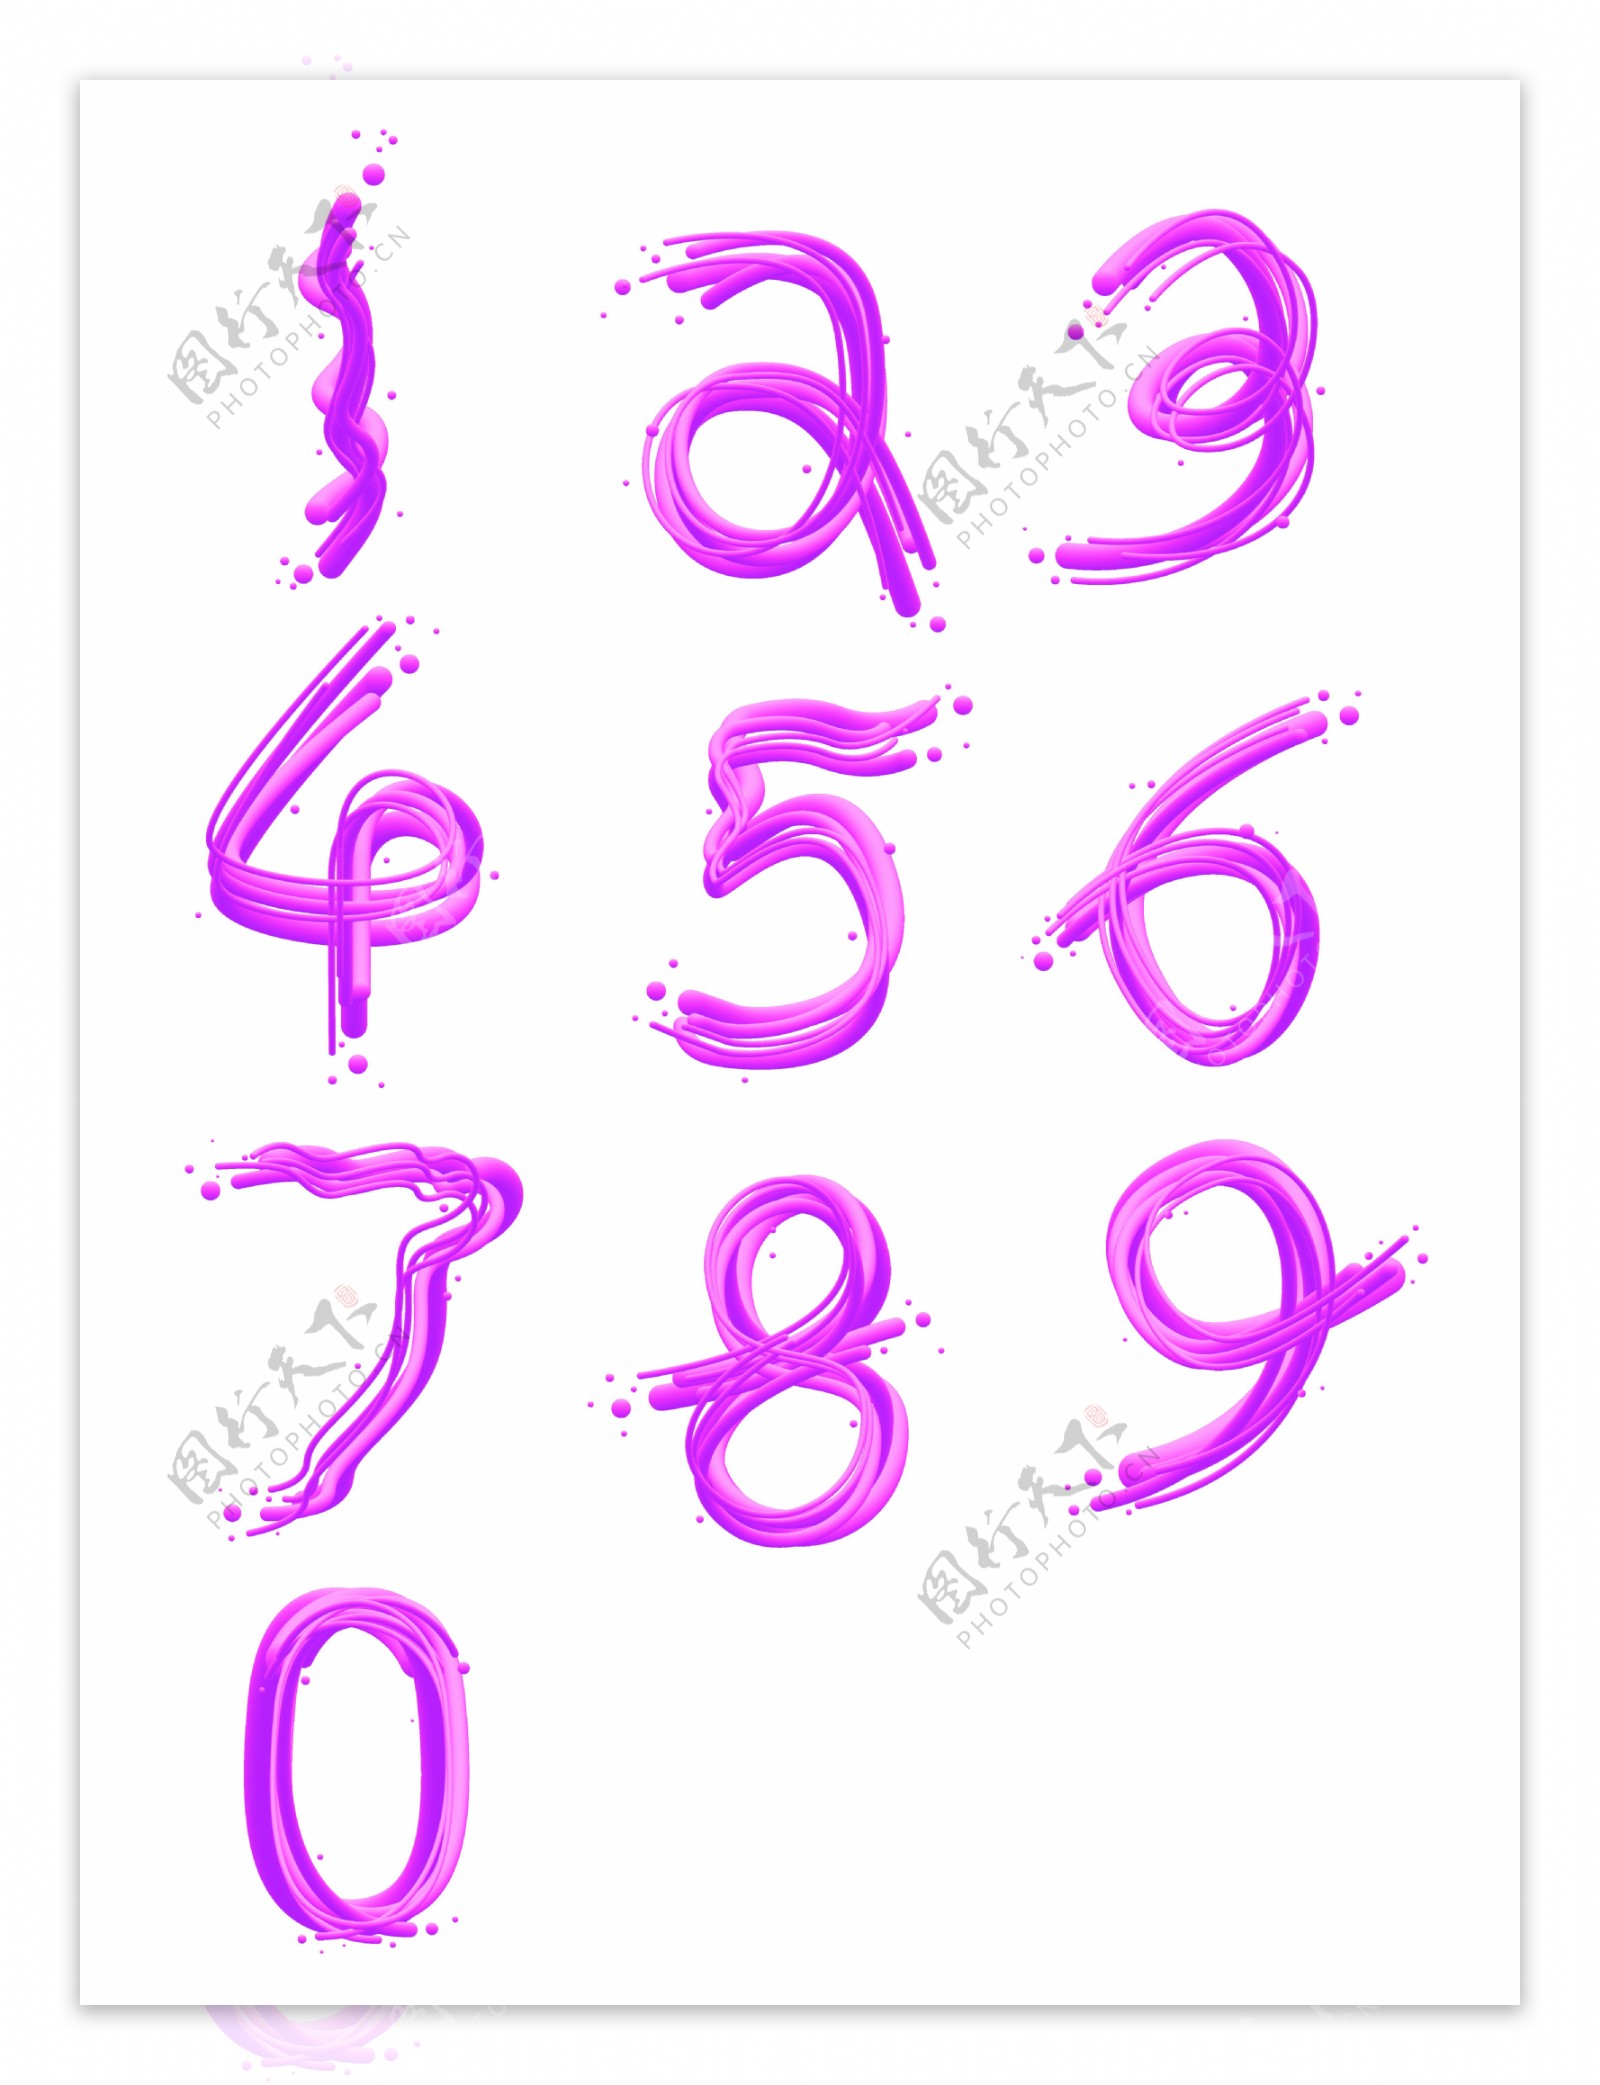 阿拉伯数字渐变混合字体设计